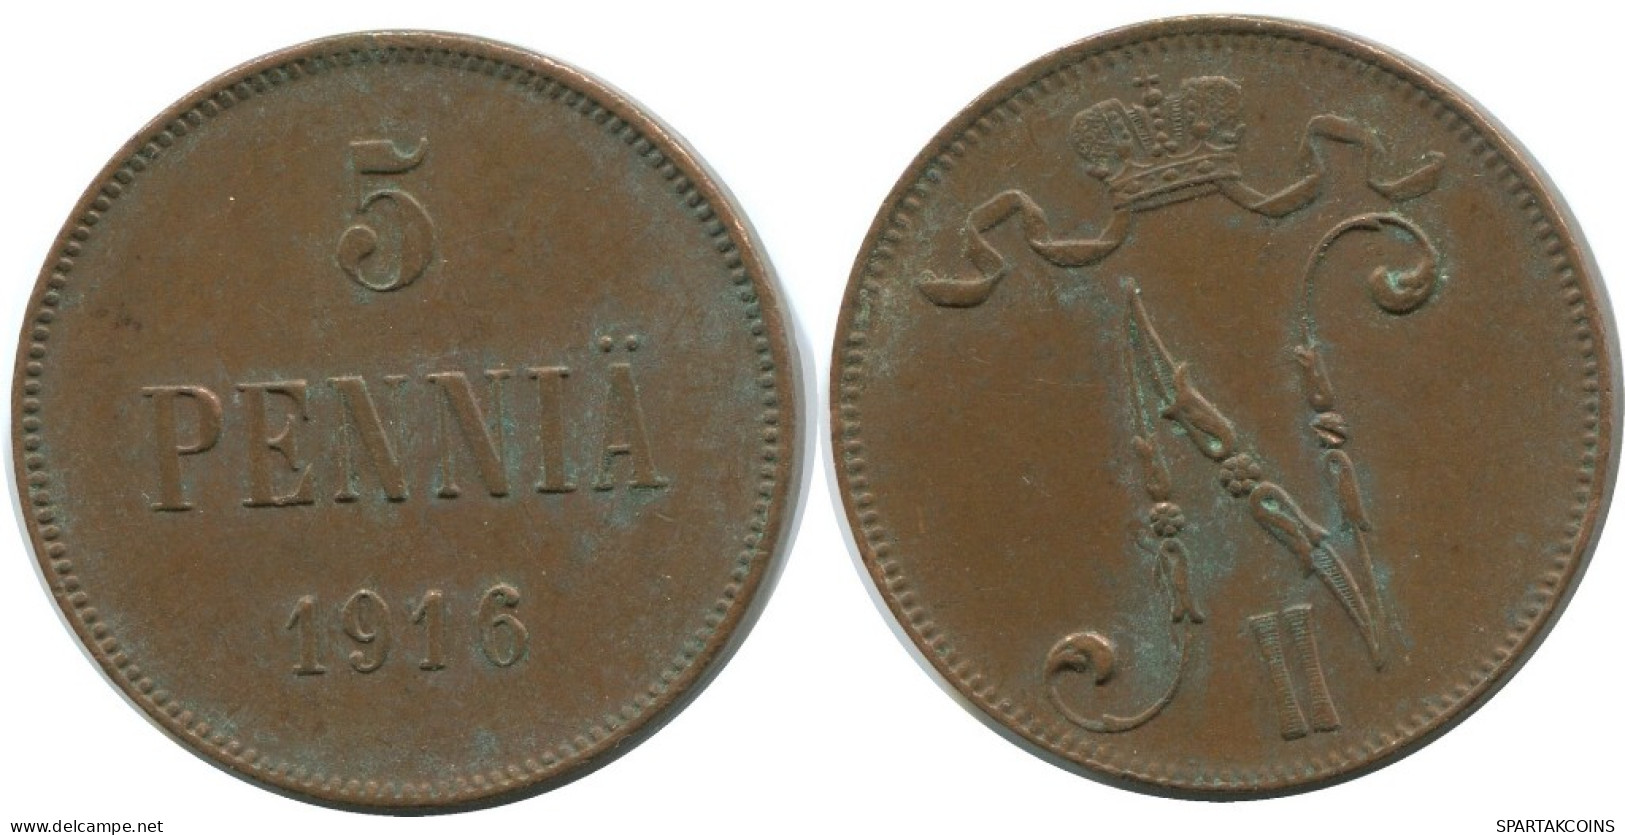 5 PENNIA 1916 FINLAND Coin RUSSIA EMPIRE #AB178.5.U.A - Finlandia